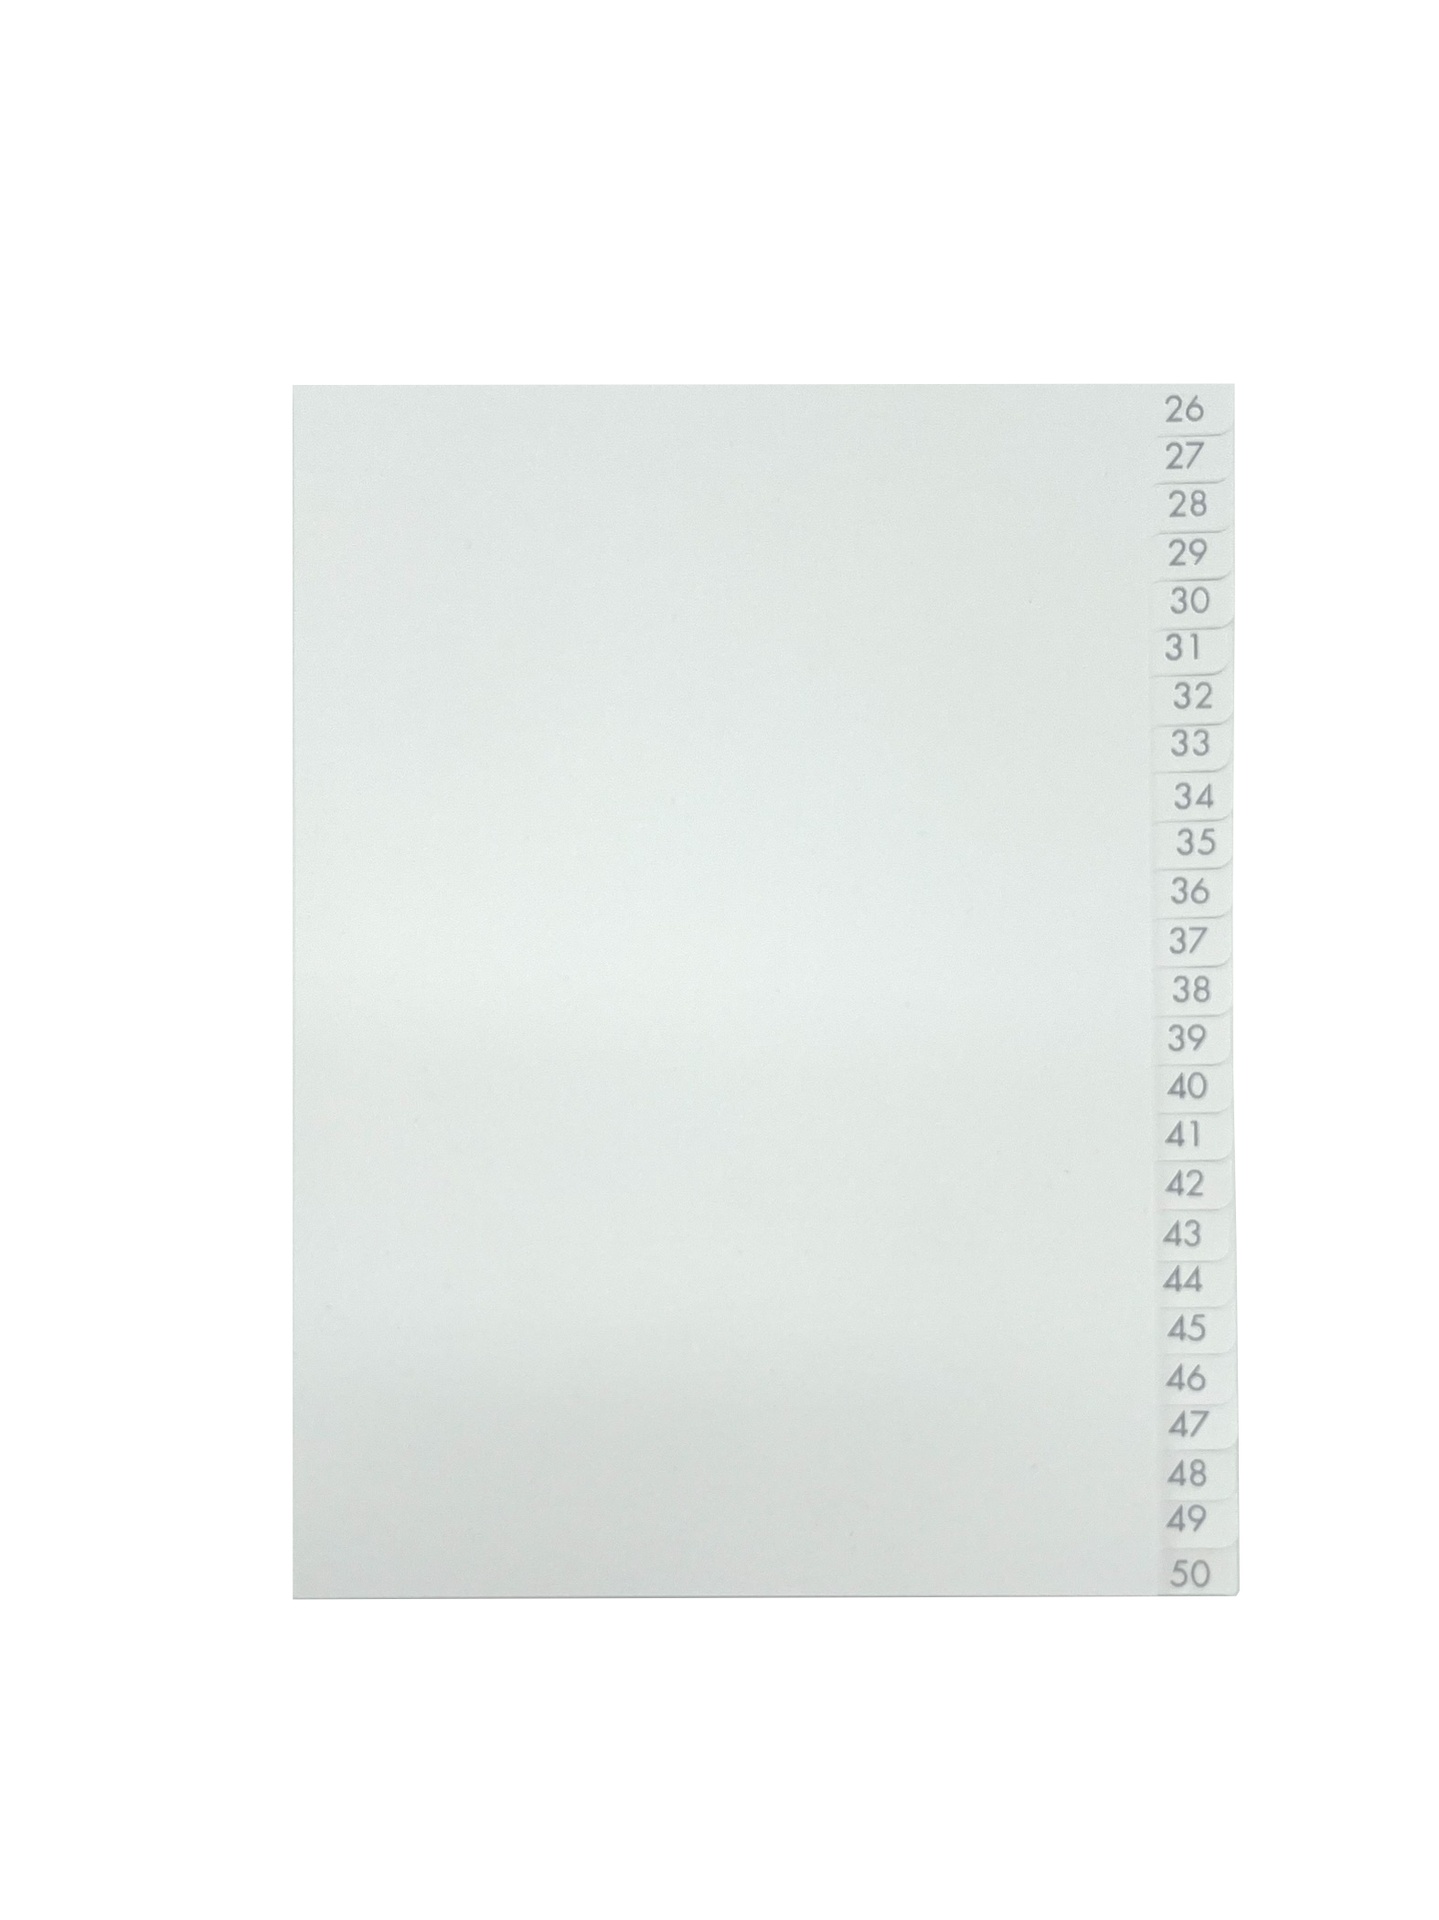 [EEHANNE010] Pärmregister A5 26-50 vita med grått tryck 25st/fp